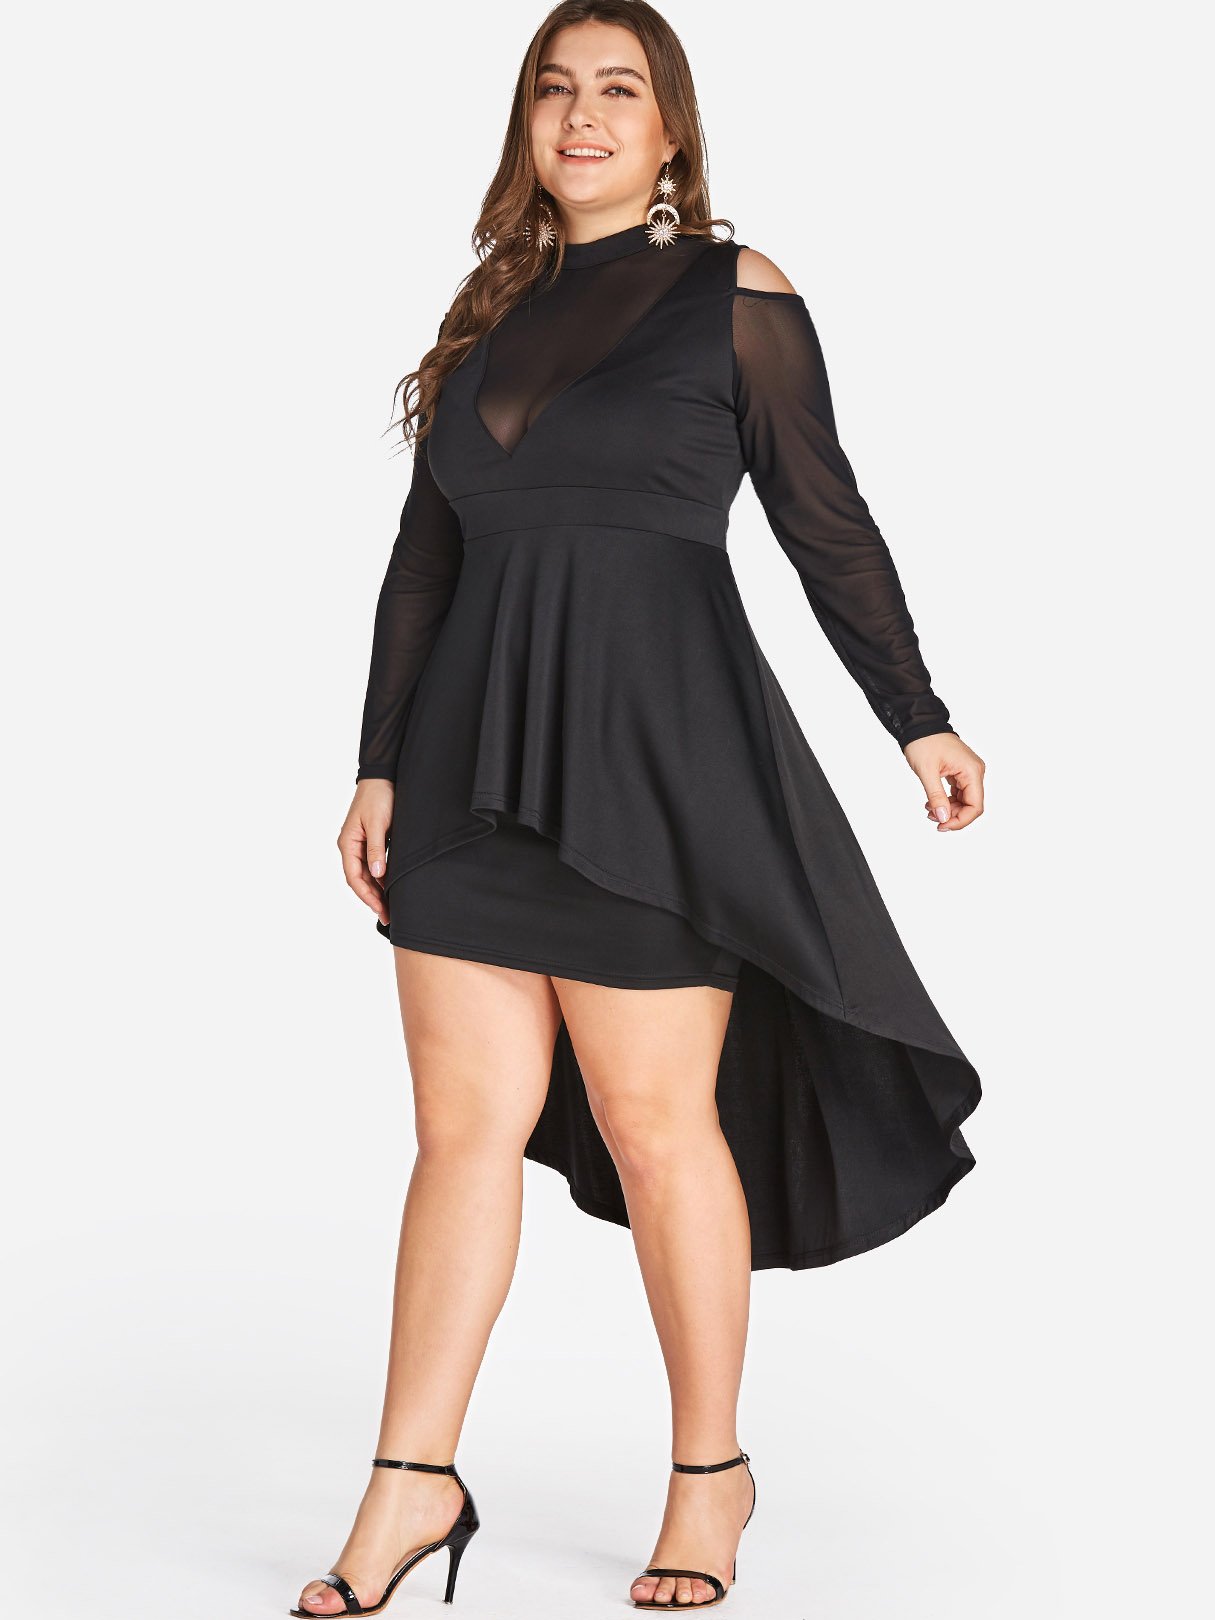 OEM Ladies Black Plus Size Dresses